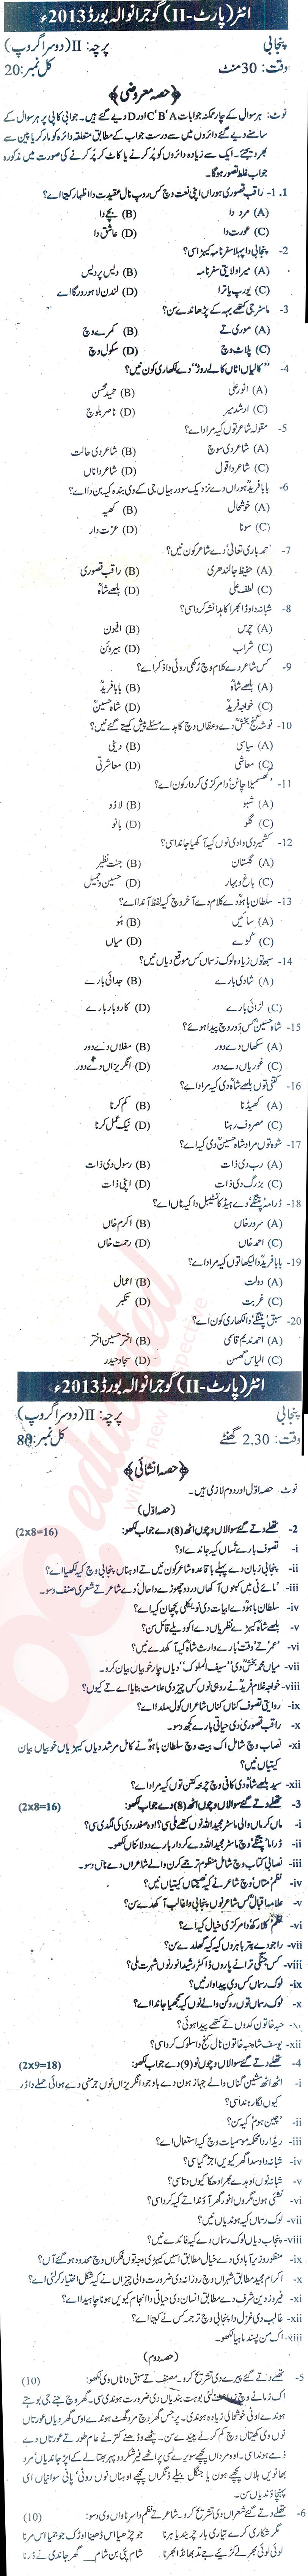 Punjabi FA Part 2 Past Paper Group 2 BISE Gujranwala 2013